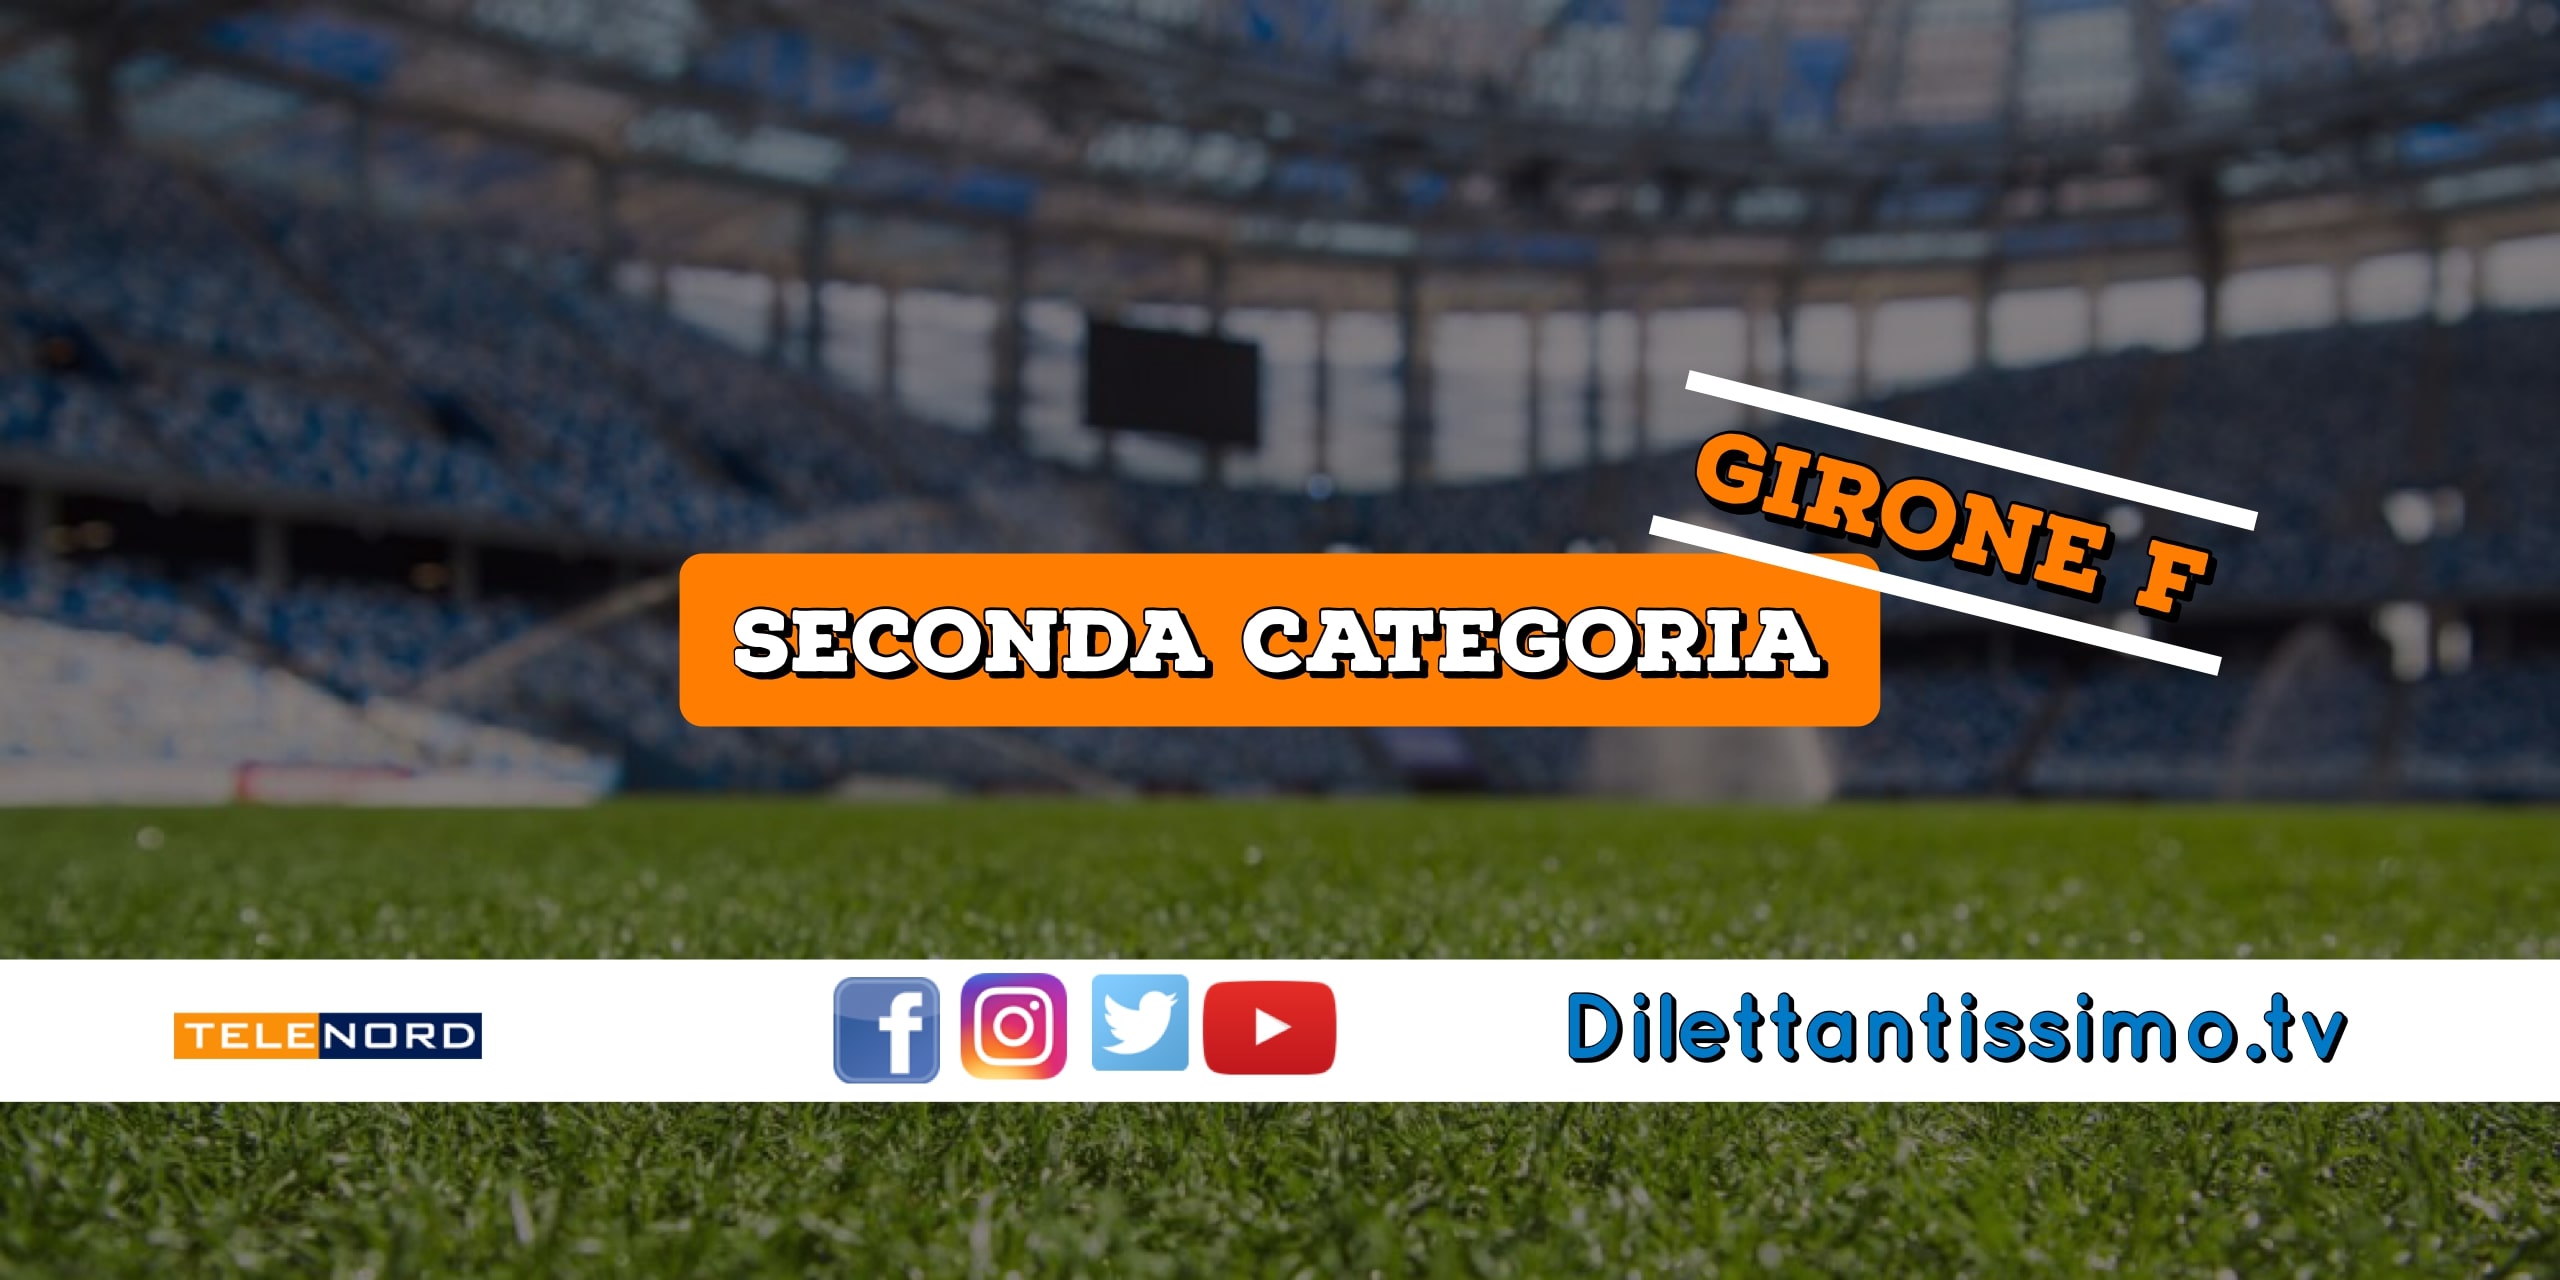 DIRETTA LIVE – SECONDA CATEGORIA GIRONE F, 7ª GIORNATA: RISULTATI E CLASSIFICA